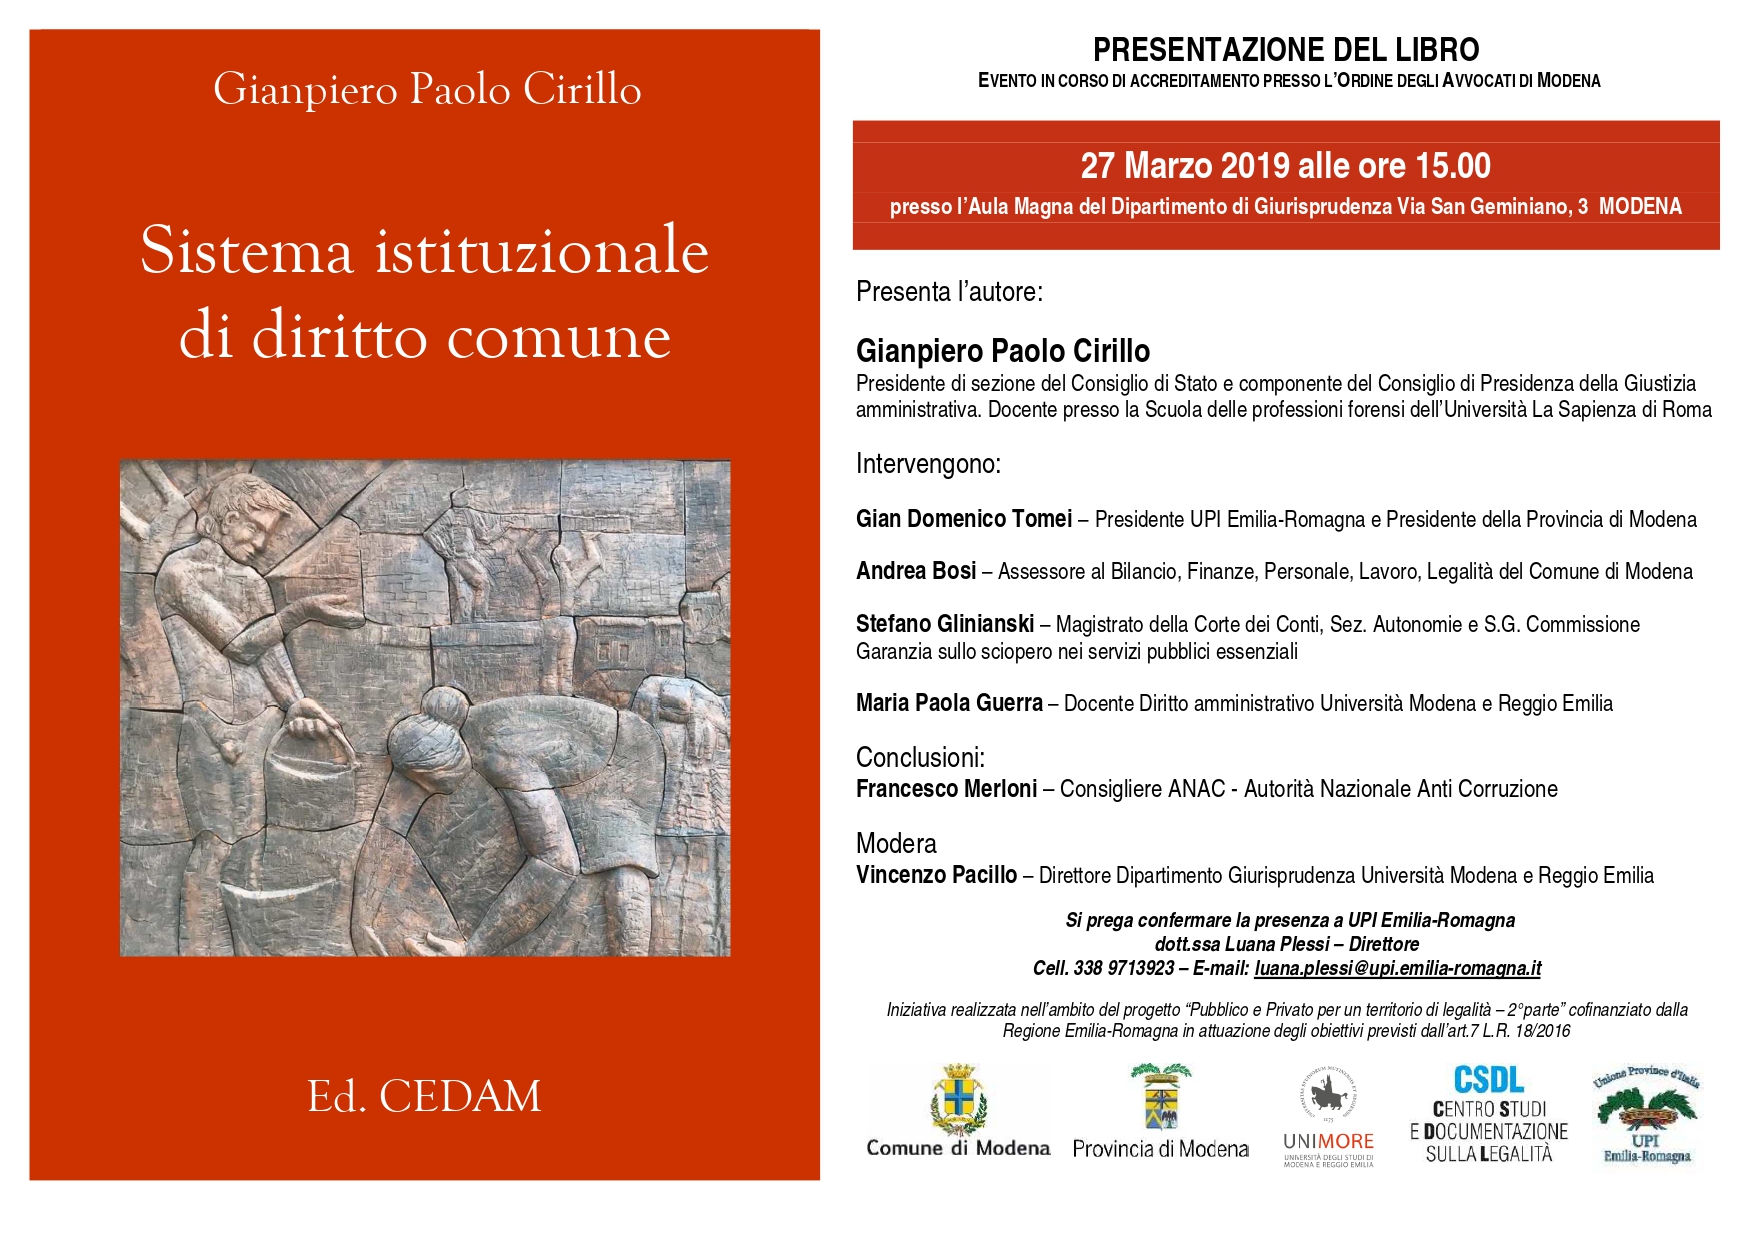 2019 03 27 Locandina presentazione libro Cirillo page 0001